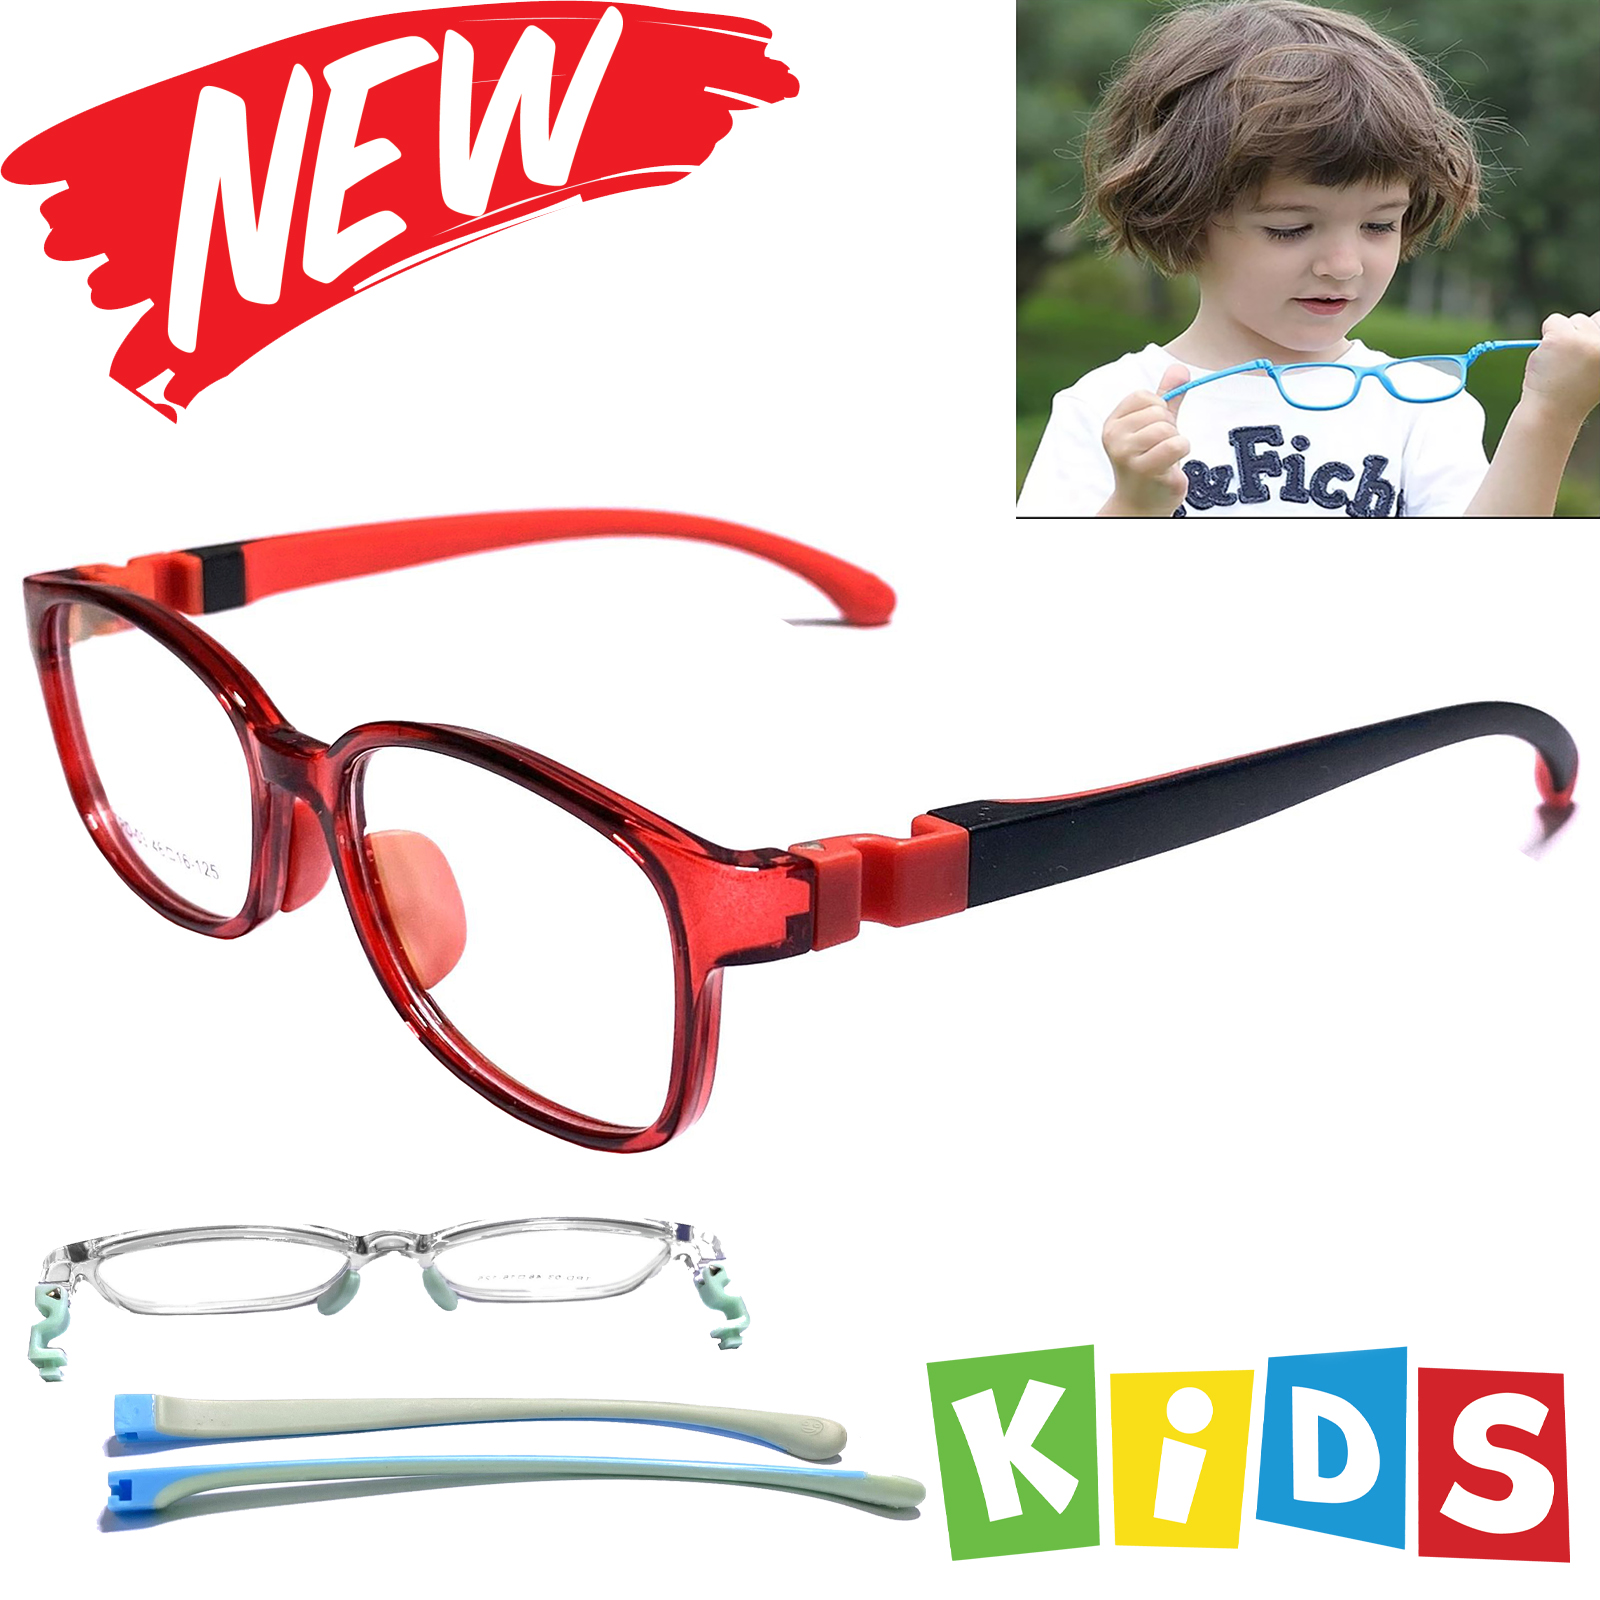 แว่นตาเด็ก  กรองแสง สีฟ้า blue block แว่นเด็ก บลูบล็อค รุ่นTRD-03 ขาข้อต่อยืดหยุ่น ถอดขาเปลี่ยนได้ วัสดุTR90เบาสวมไส่สบาย